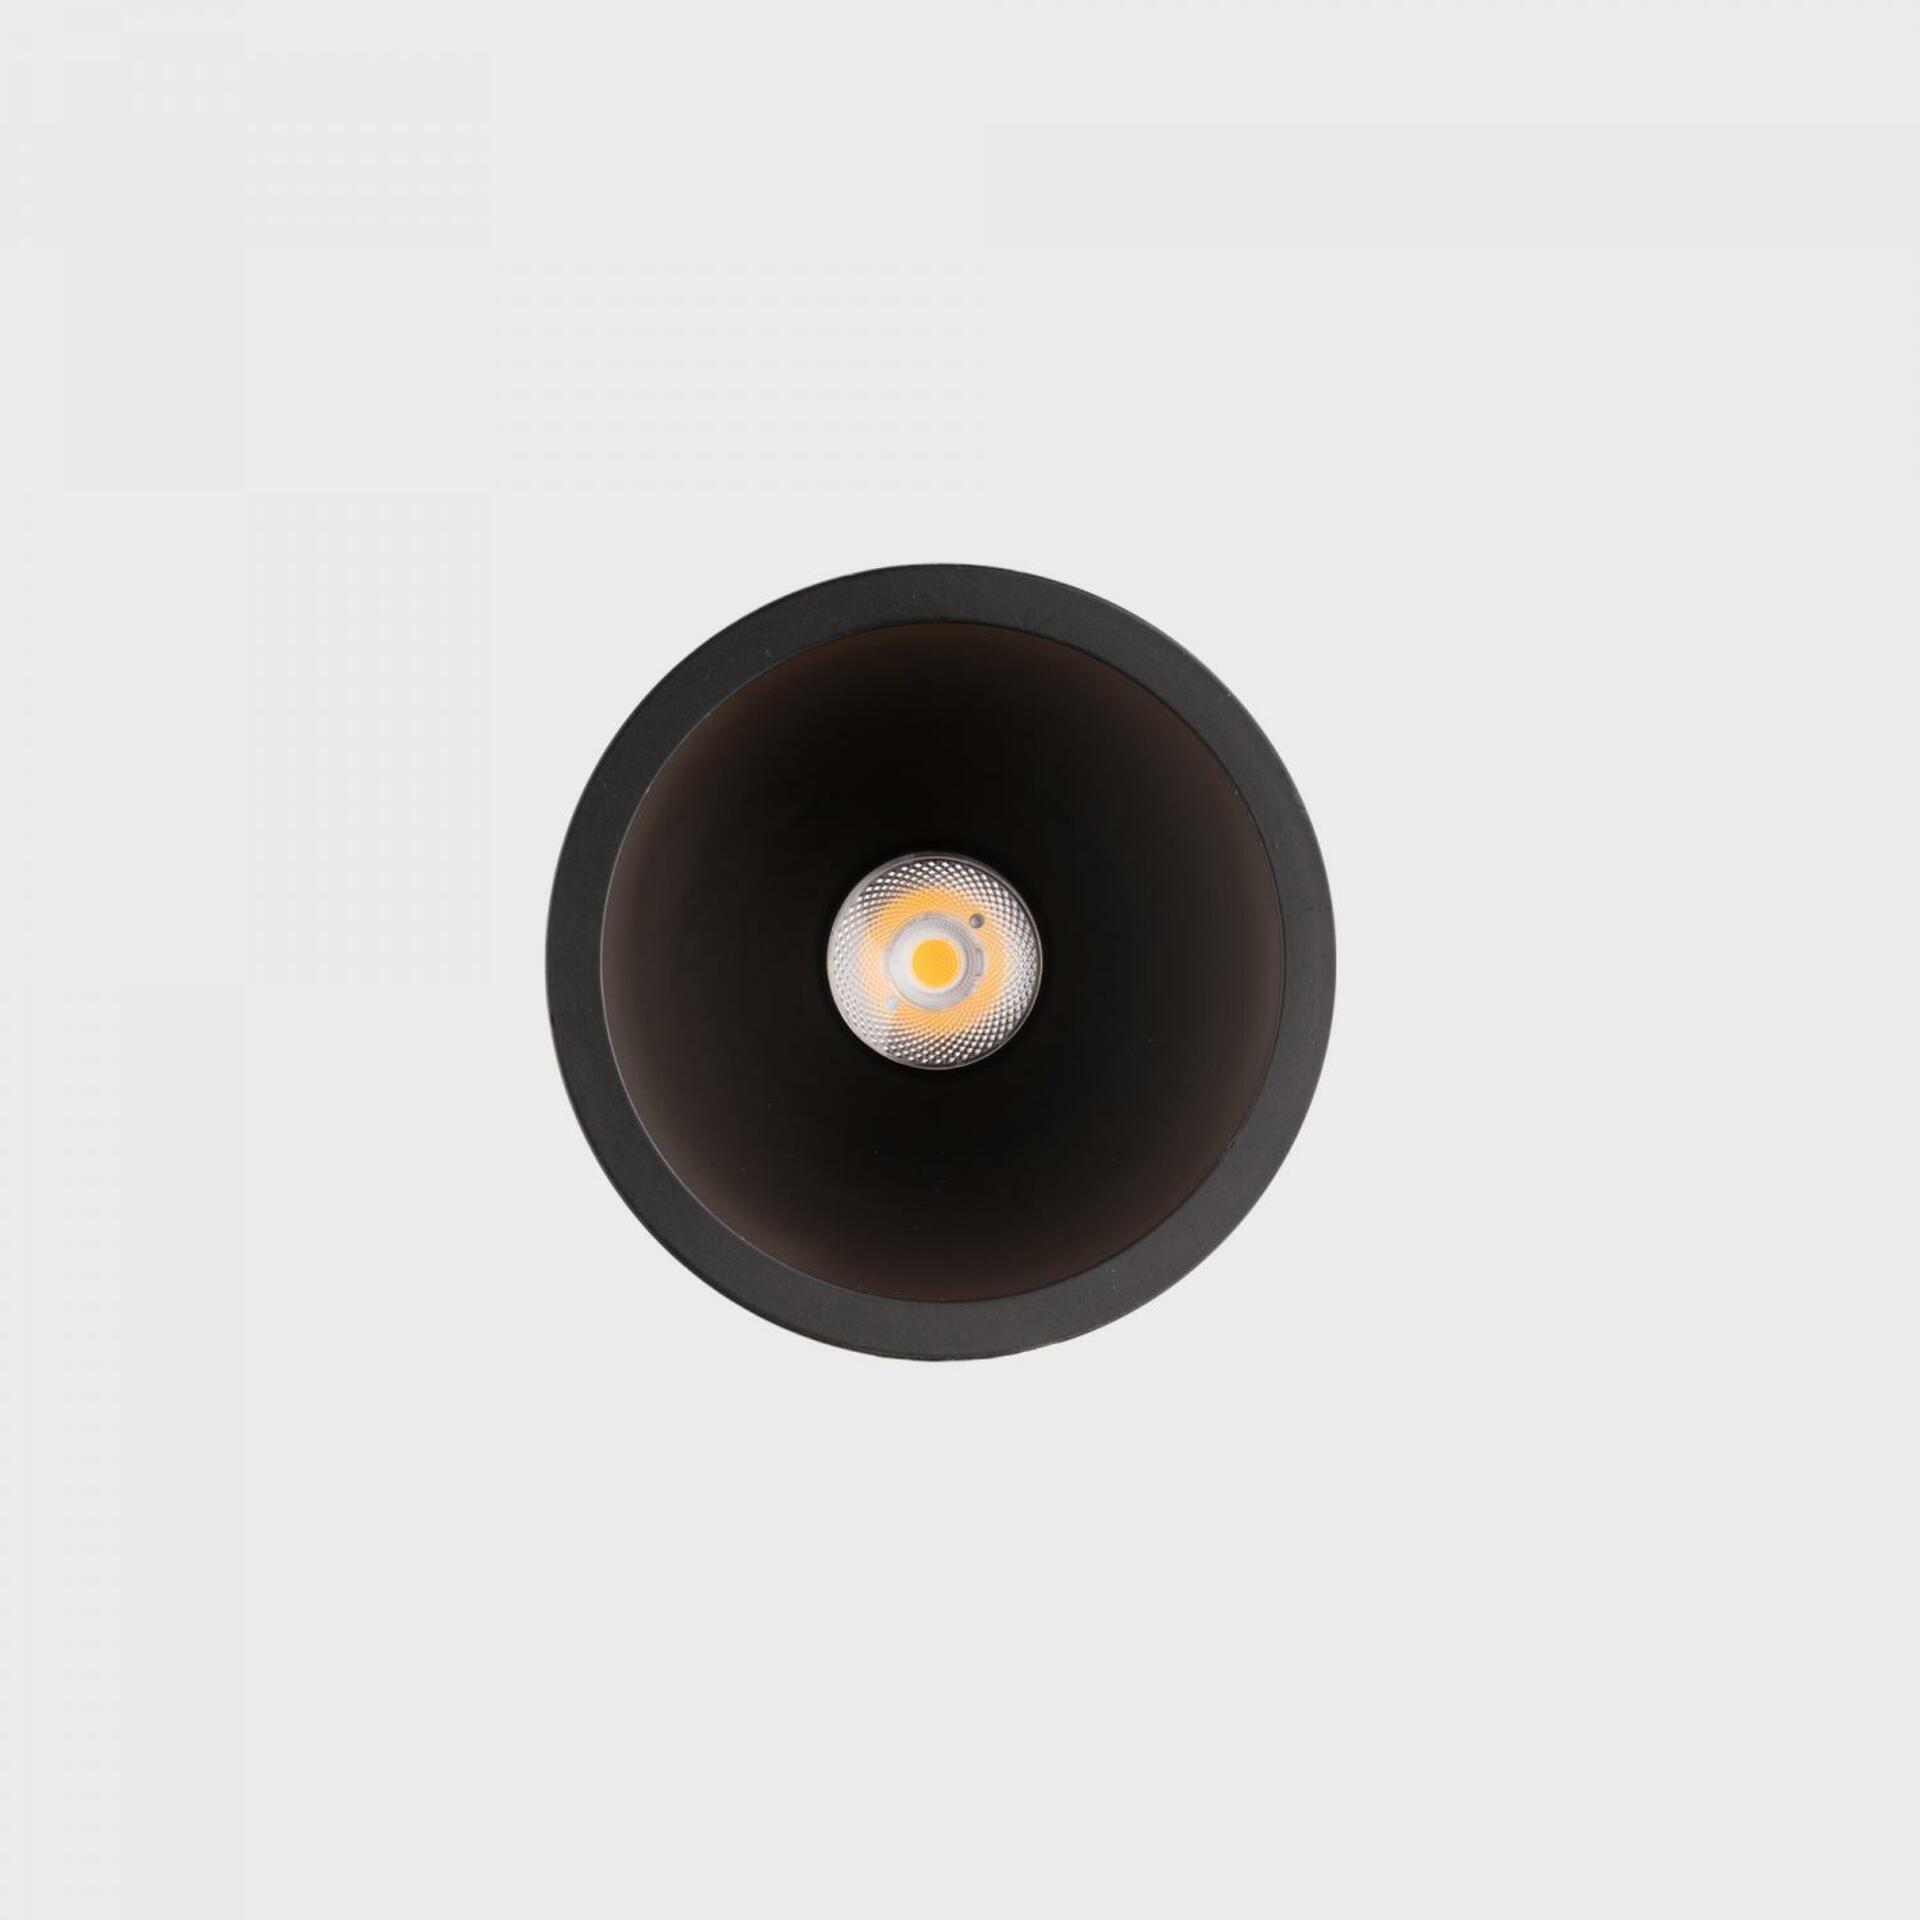 KOHL LIGHTING KOHL-Lighting NOON zapuštěné svítidlo s rámečkem pr. 70 mm černá 38° 5 W  CRI 80 3000K PUSH